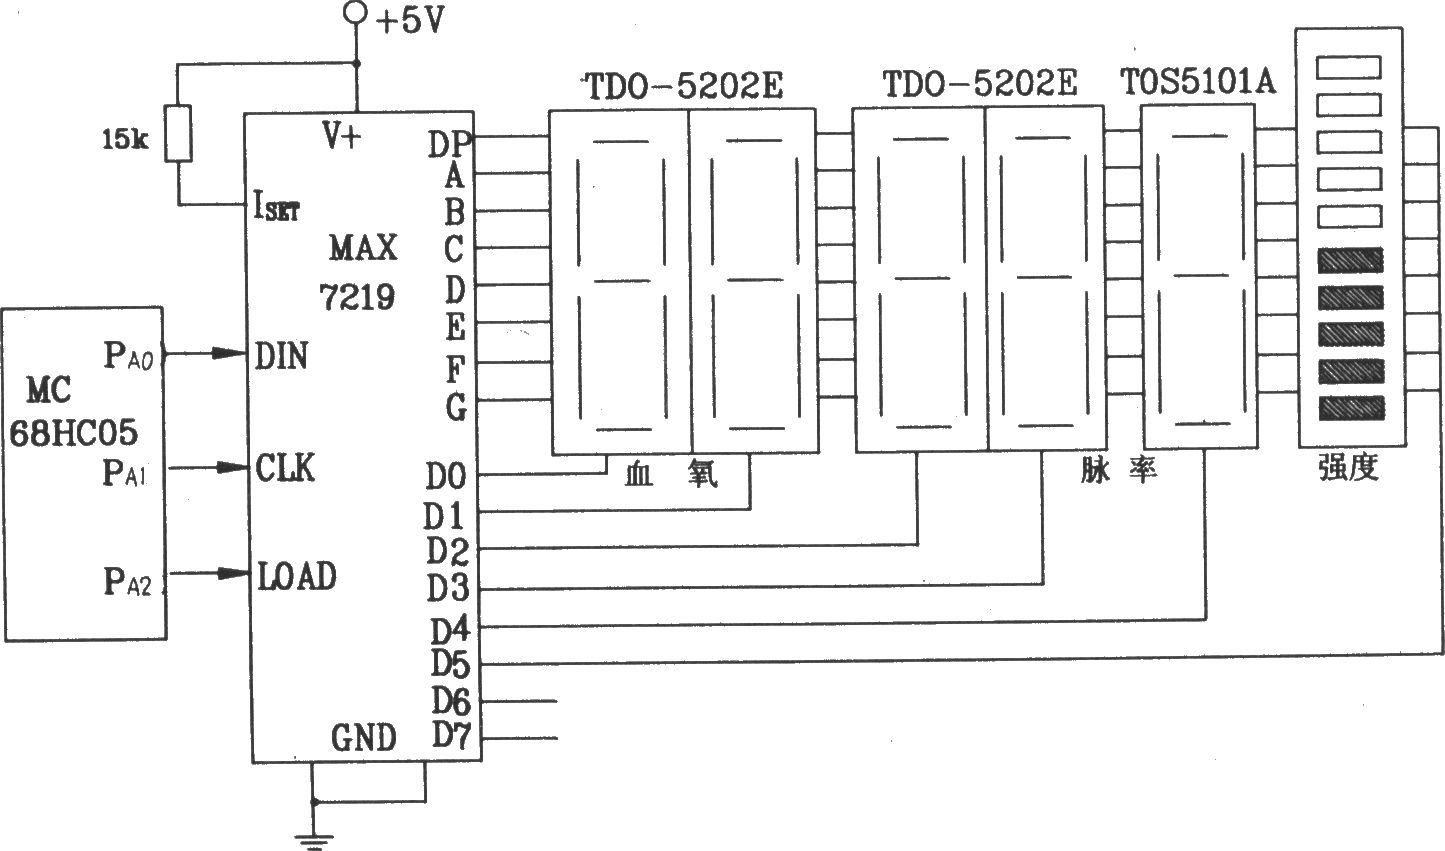 由MAX7219串行接口8位LED显示驱动集成电路与68HC05单片机构成的